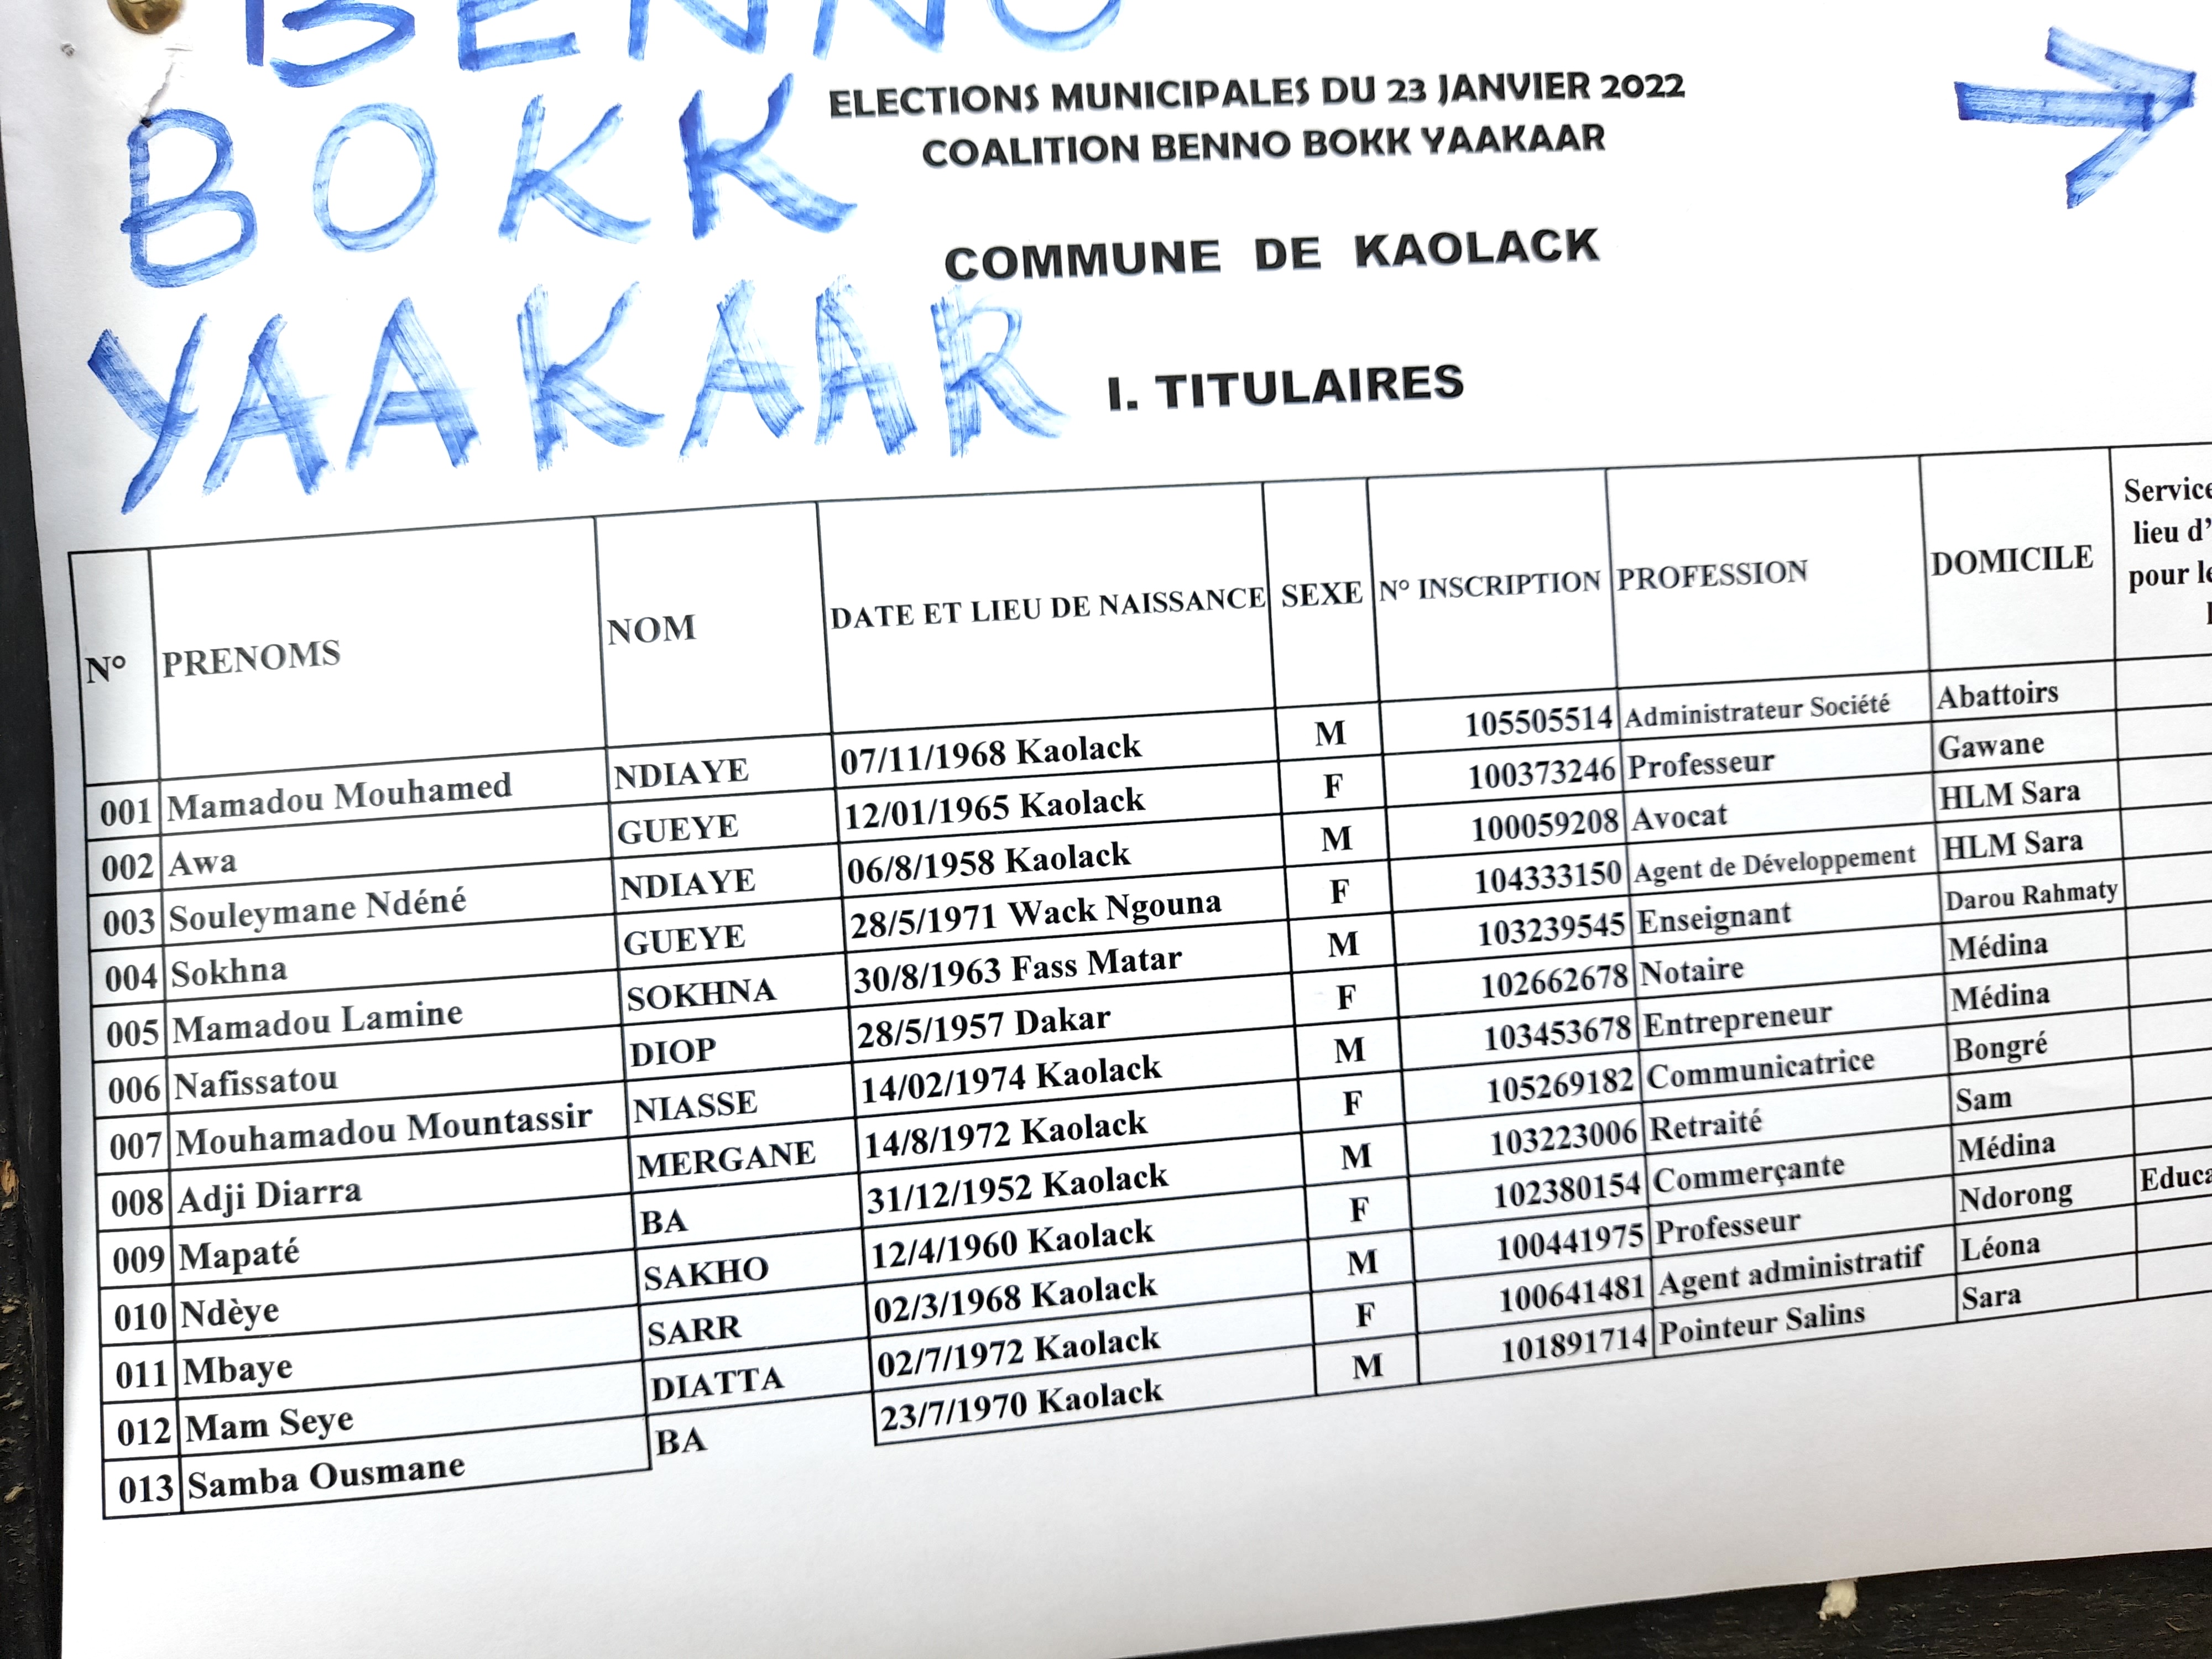 Préfecture de Kaolack : Publication de la liste de Benno Bokk Yakaar (documents).